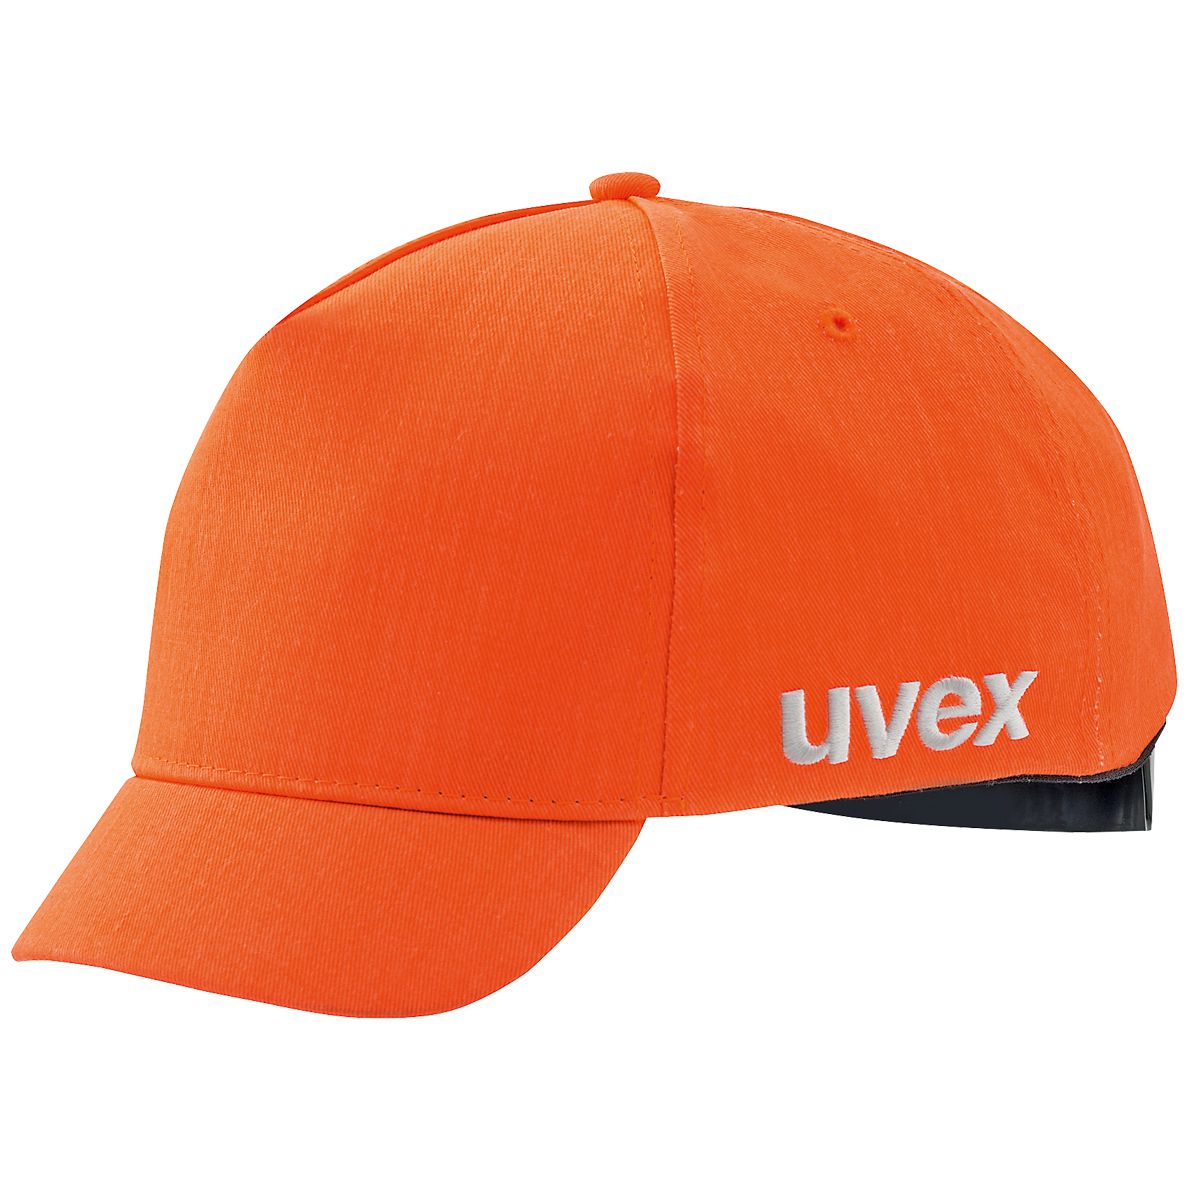 uvex u-cap sport Anstoßkappe - Schutzkappe mit kurzem Schirm - für Bau & Industrie - EN 812 - Orange - 55 bis 59 cm